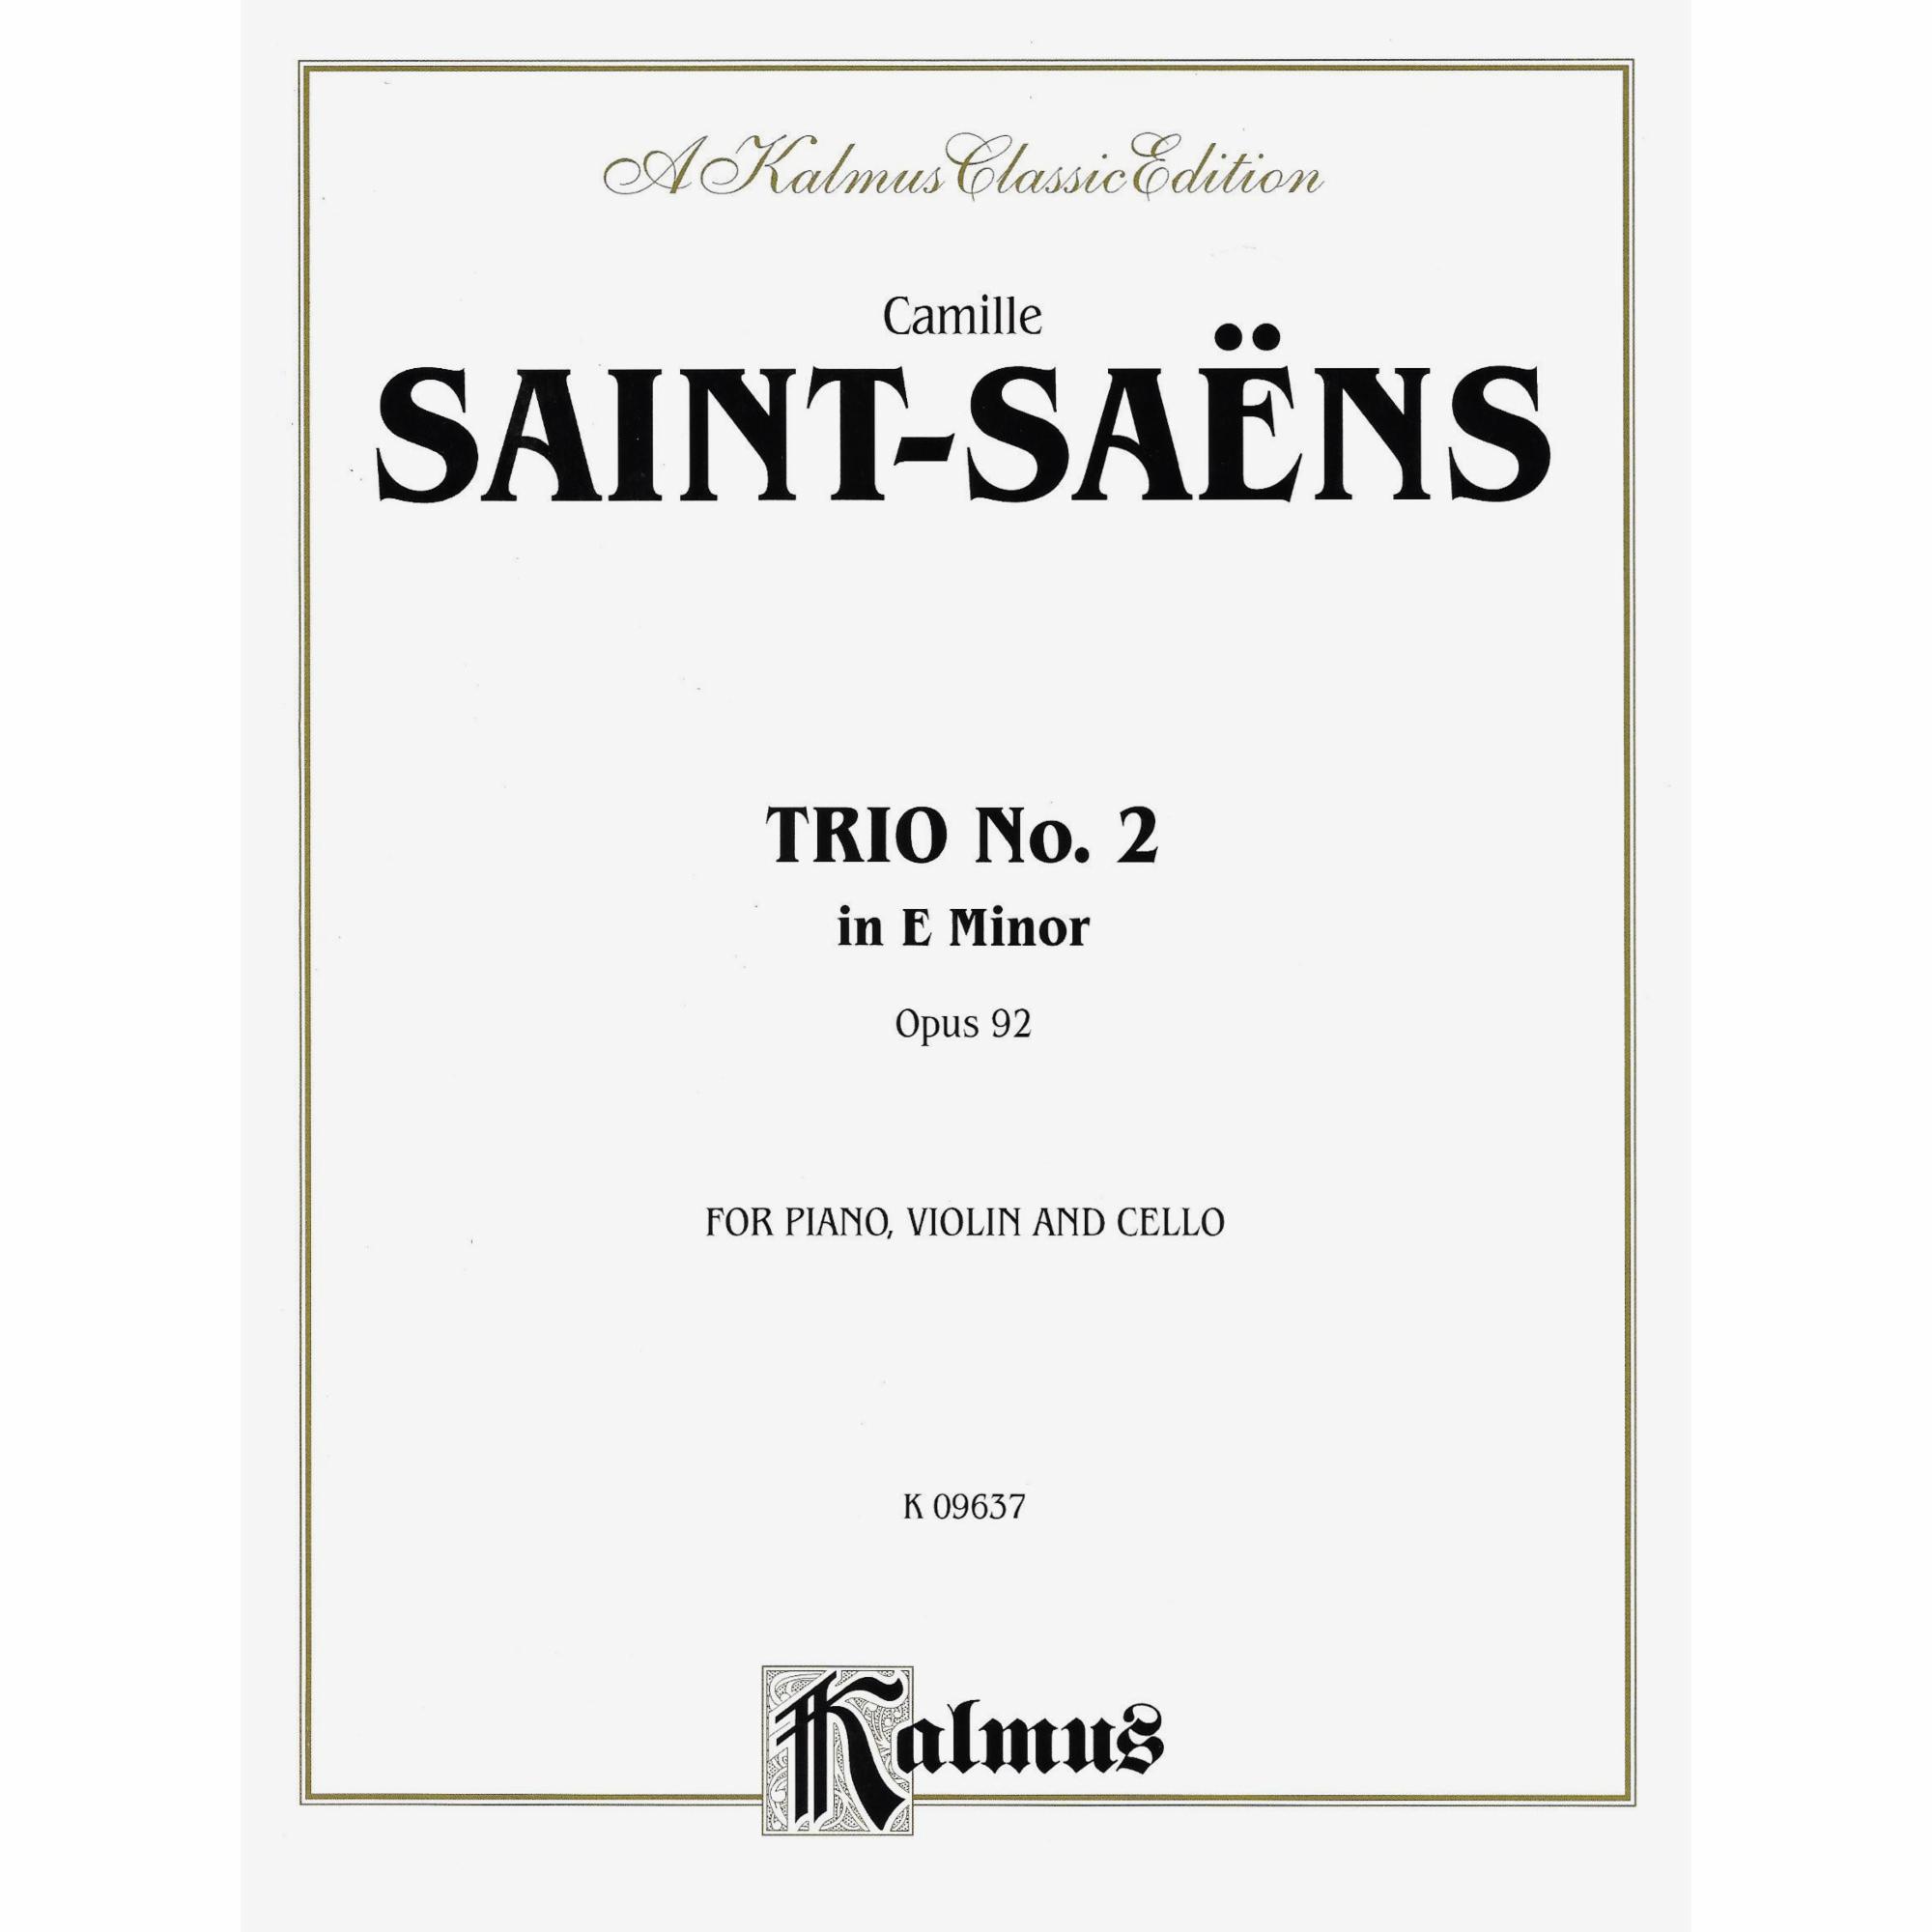 Saint-Saens -- Piano Trio No. 2 in E Minor, Op. 92